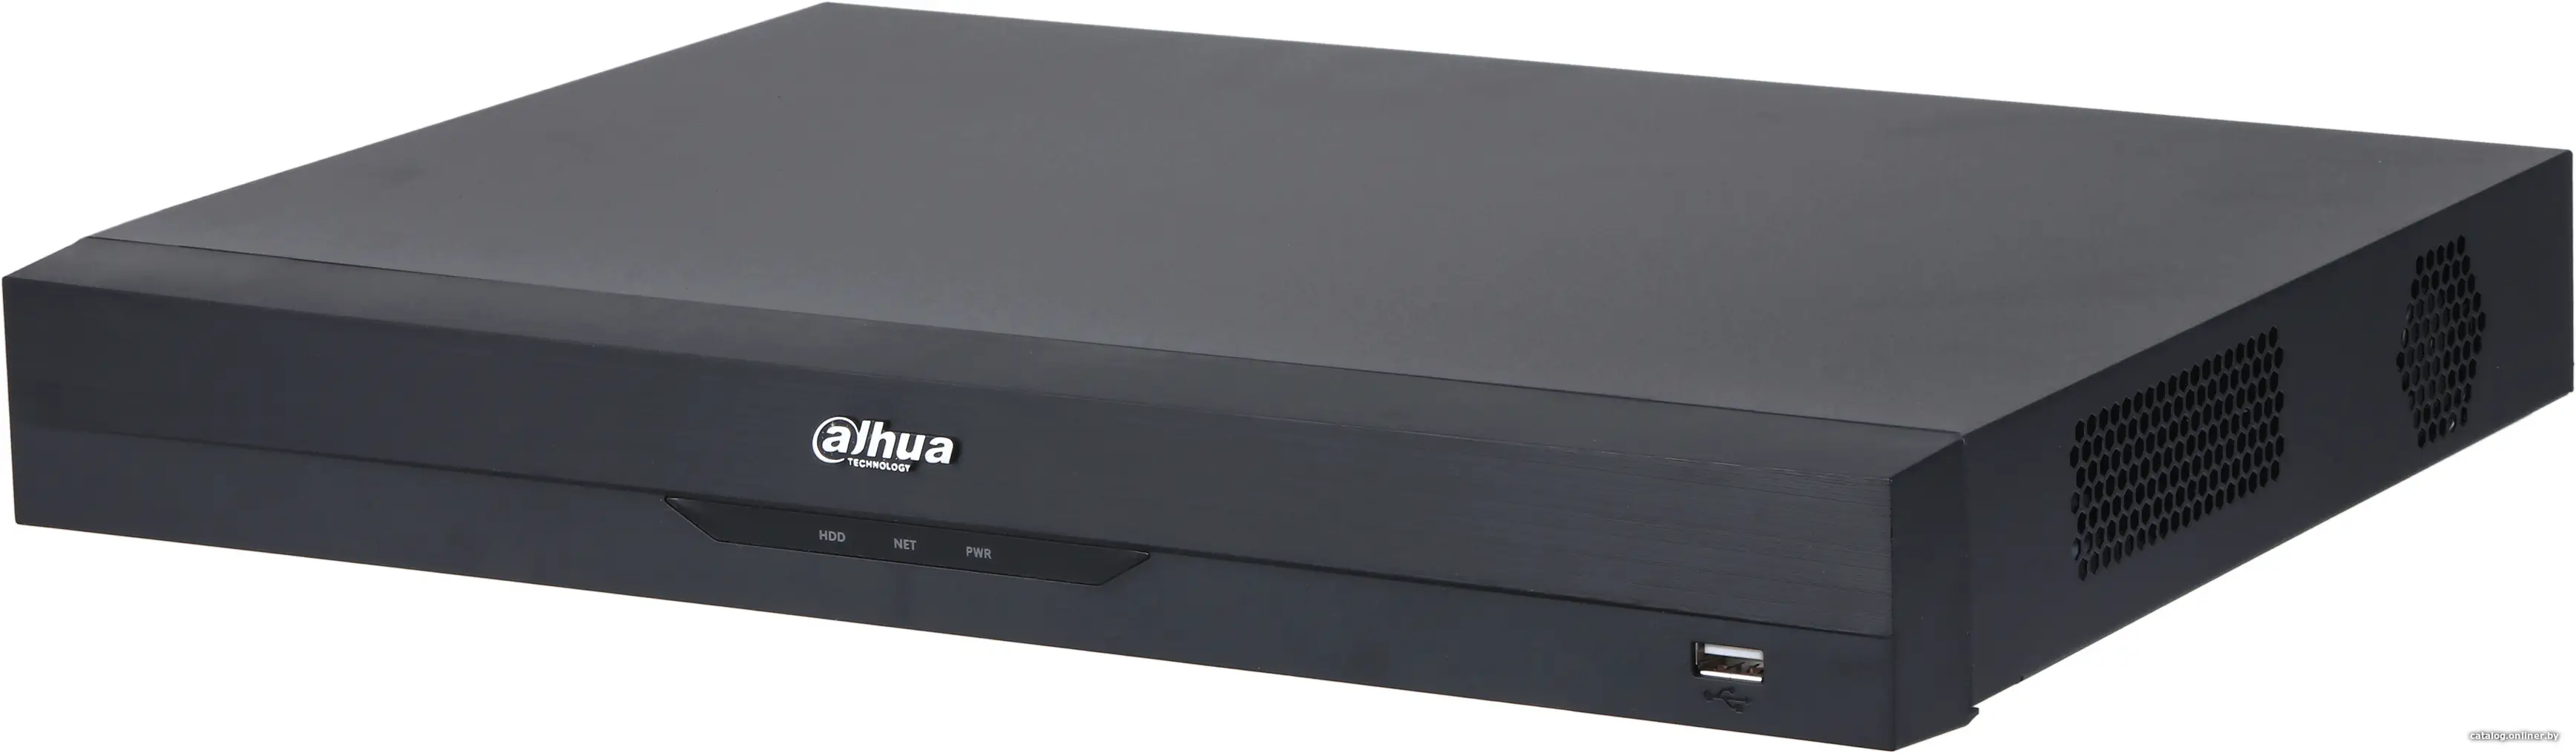 Купить Гибридный видеорегистратор Dahua DH-XVR5216AN-4KL-I3, цена, опт и розница